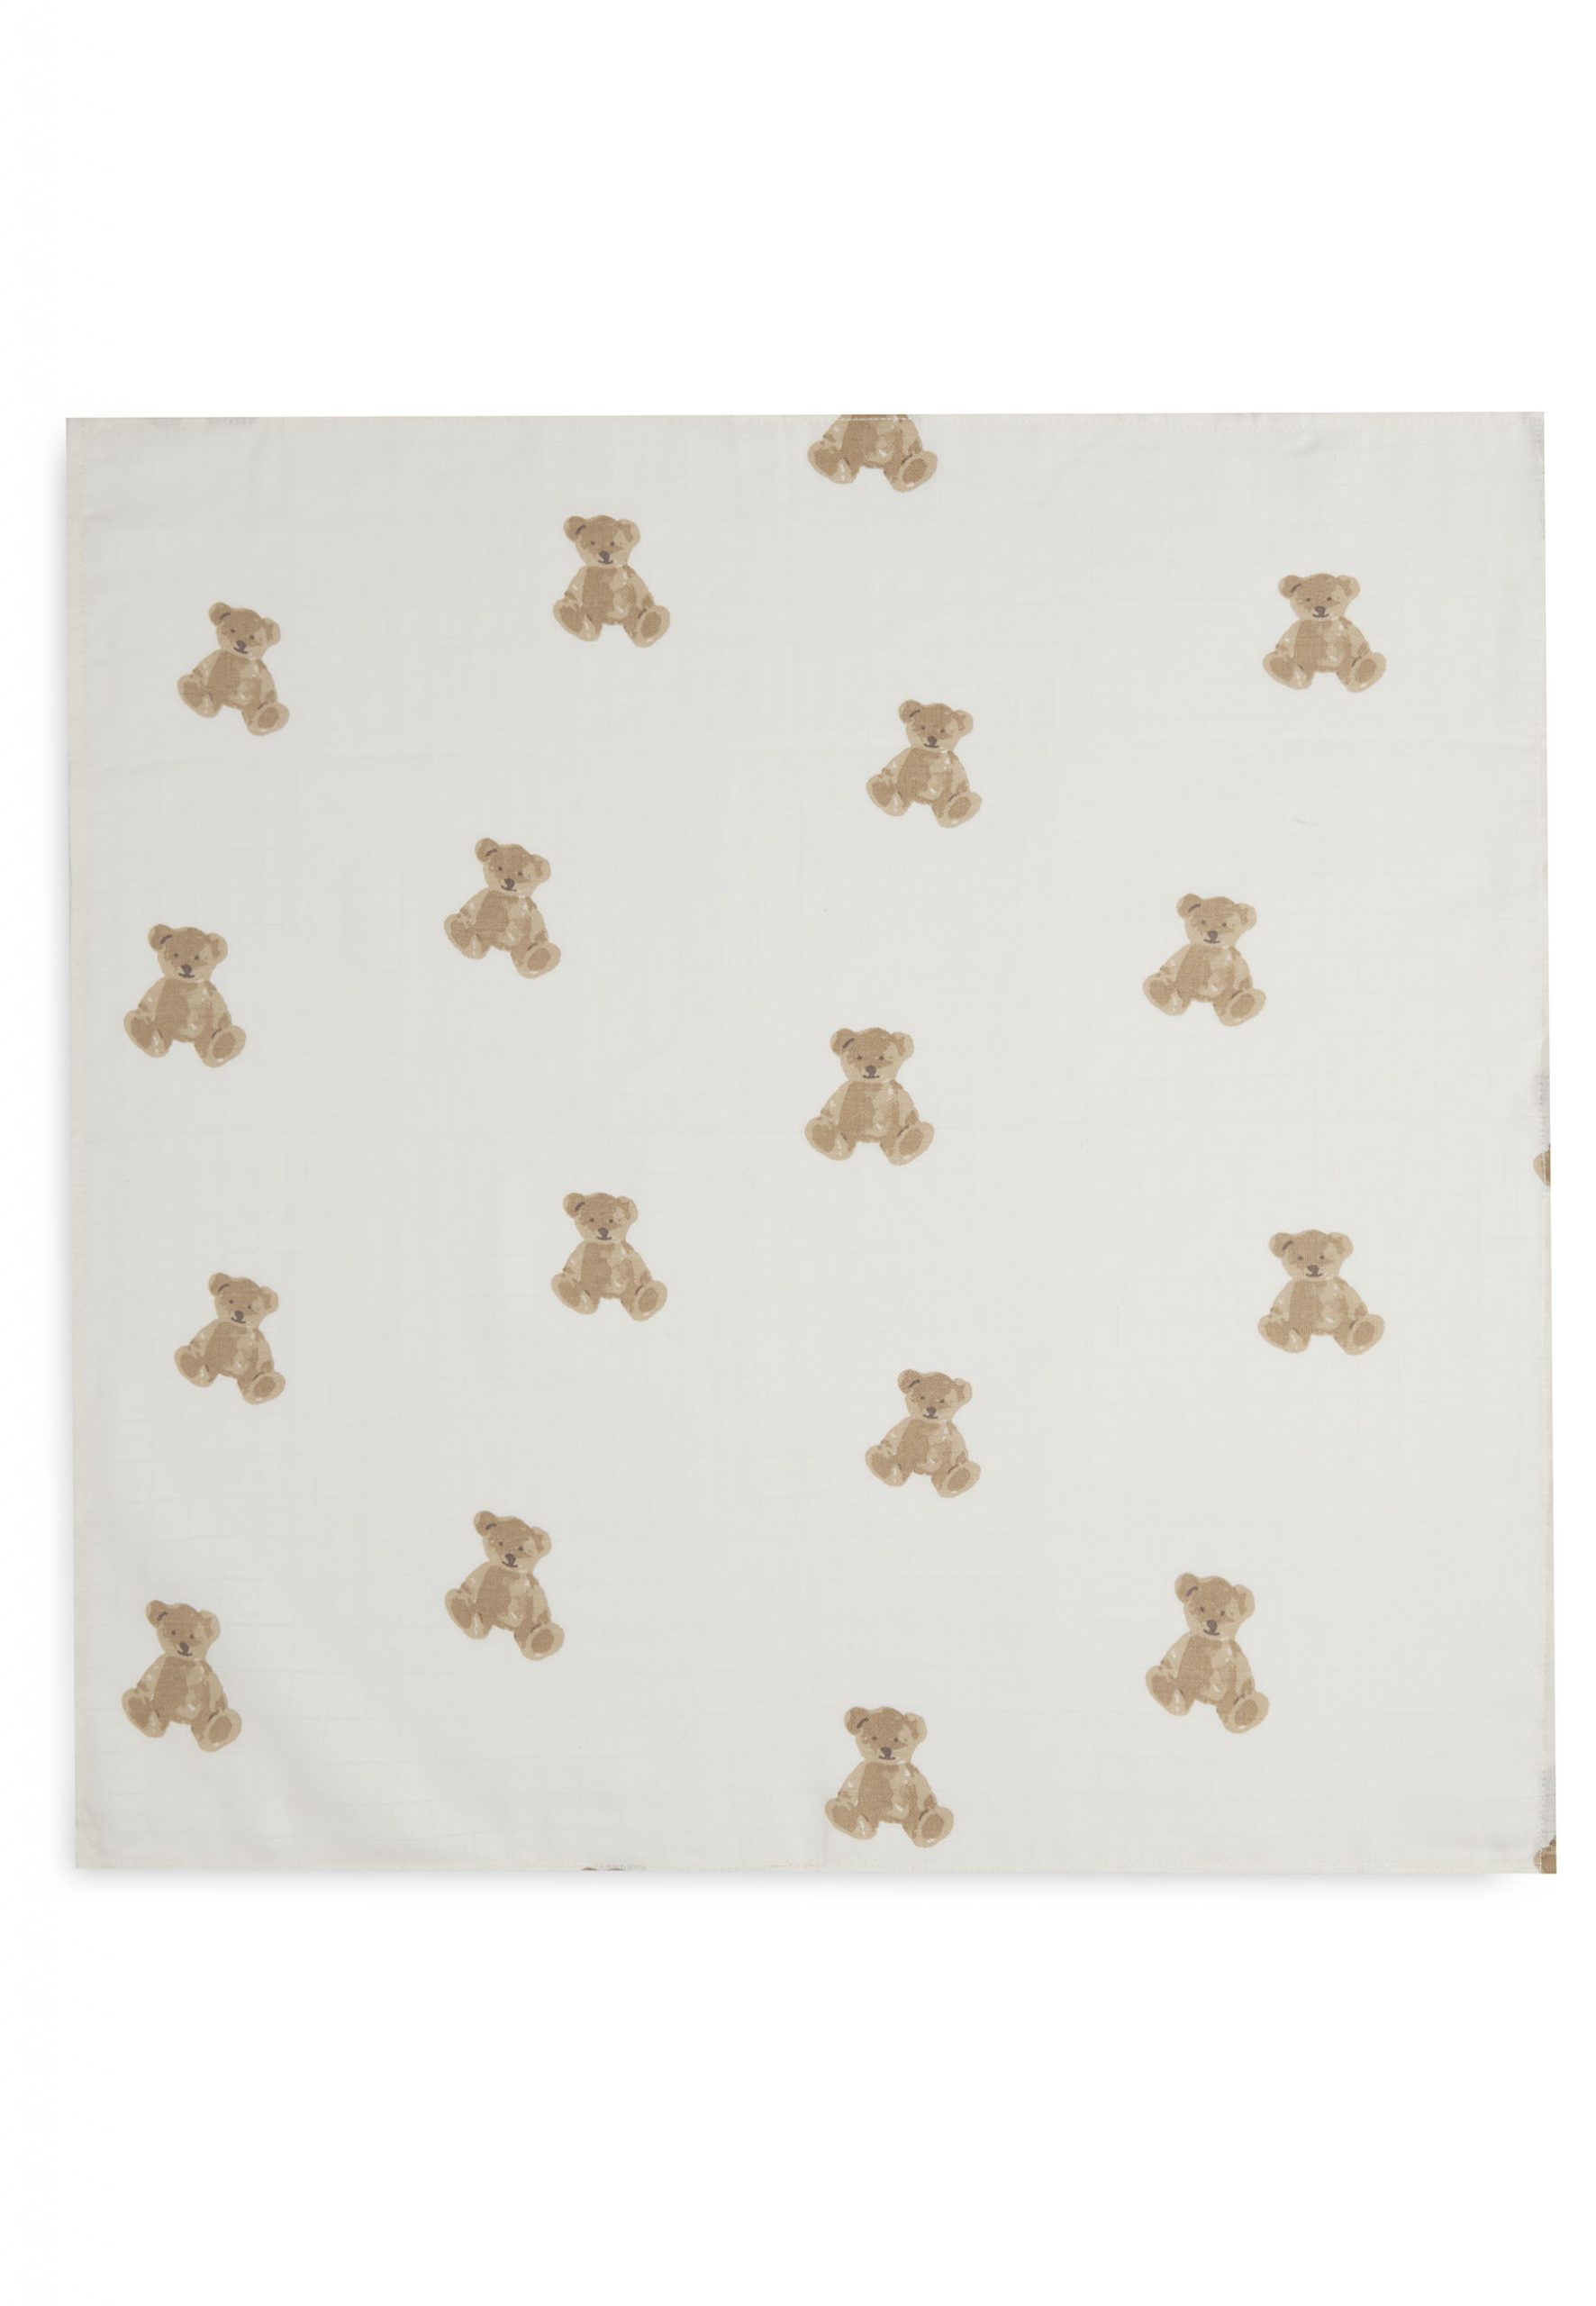 JOLLEIN – Lange gaze de coton 70×70 teddy bear pack x3